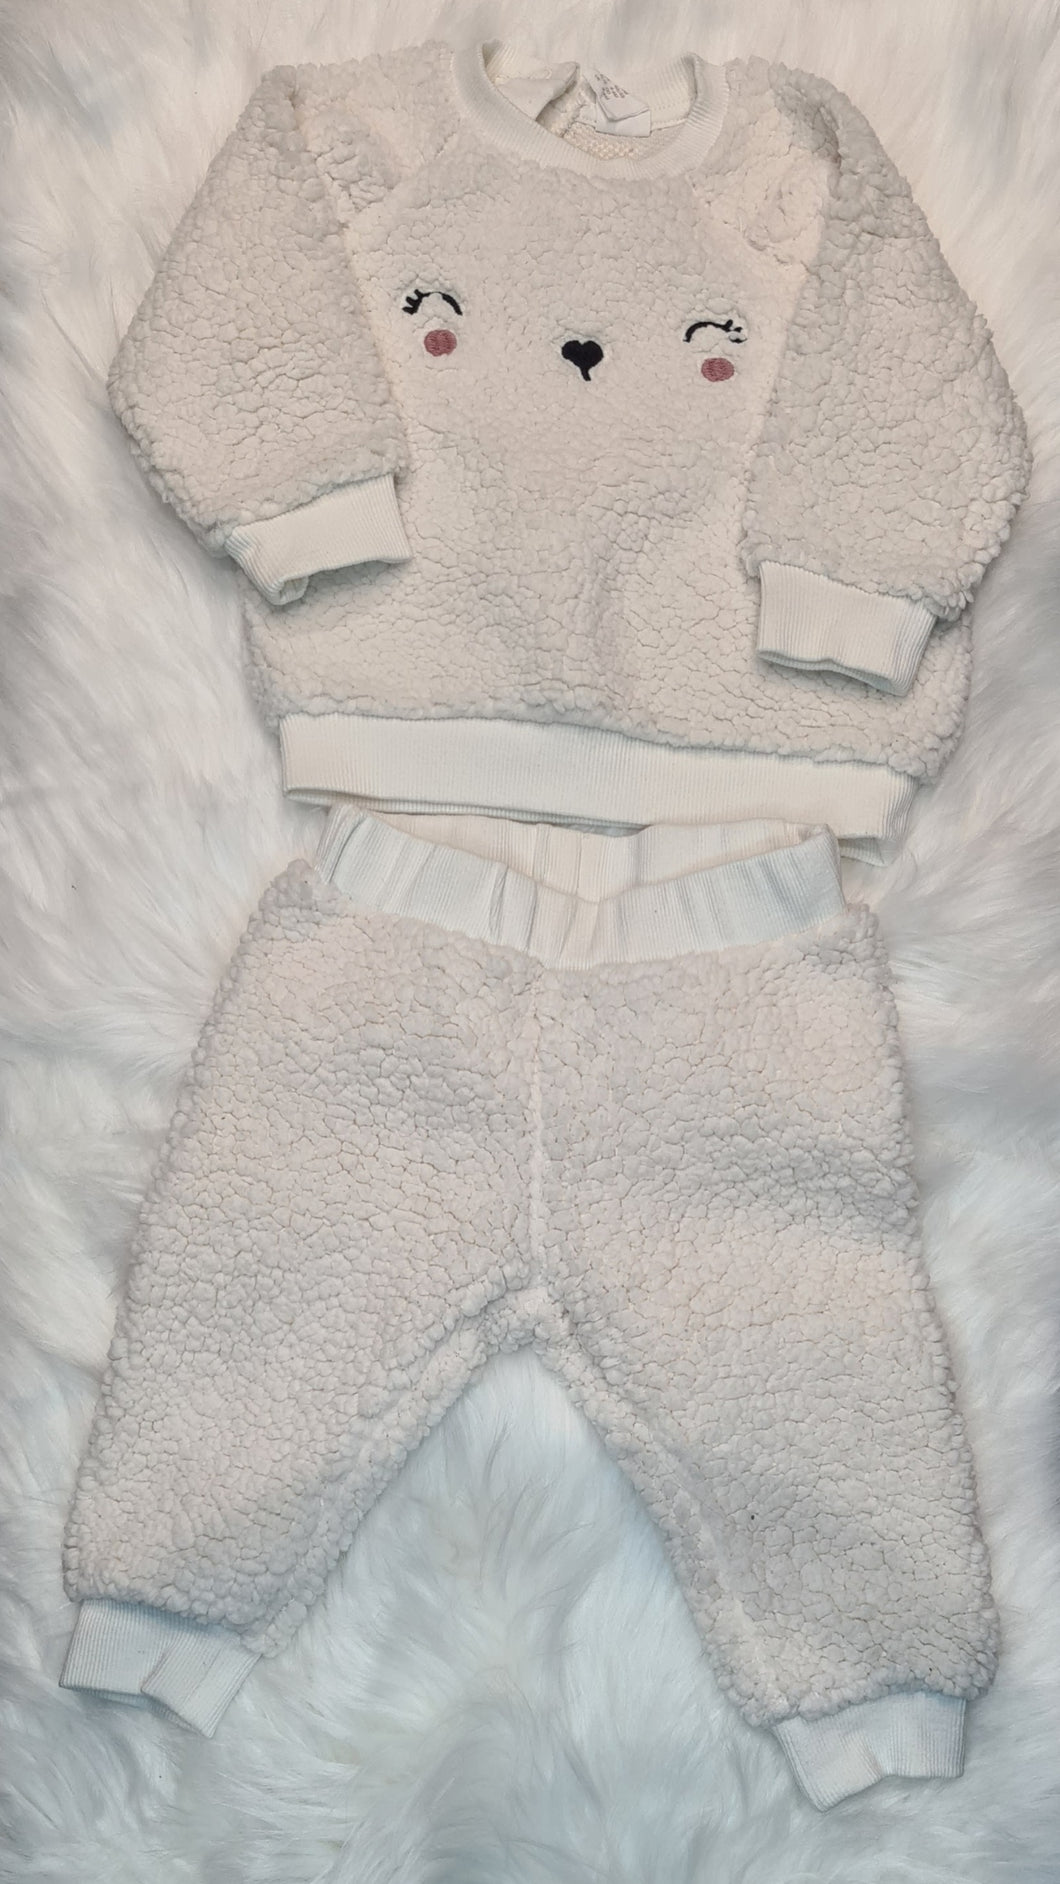 Girls 3-6 Months - White Fluffy Bunny Rabbit Pyjamas Set